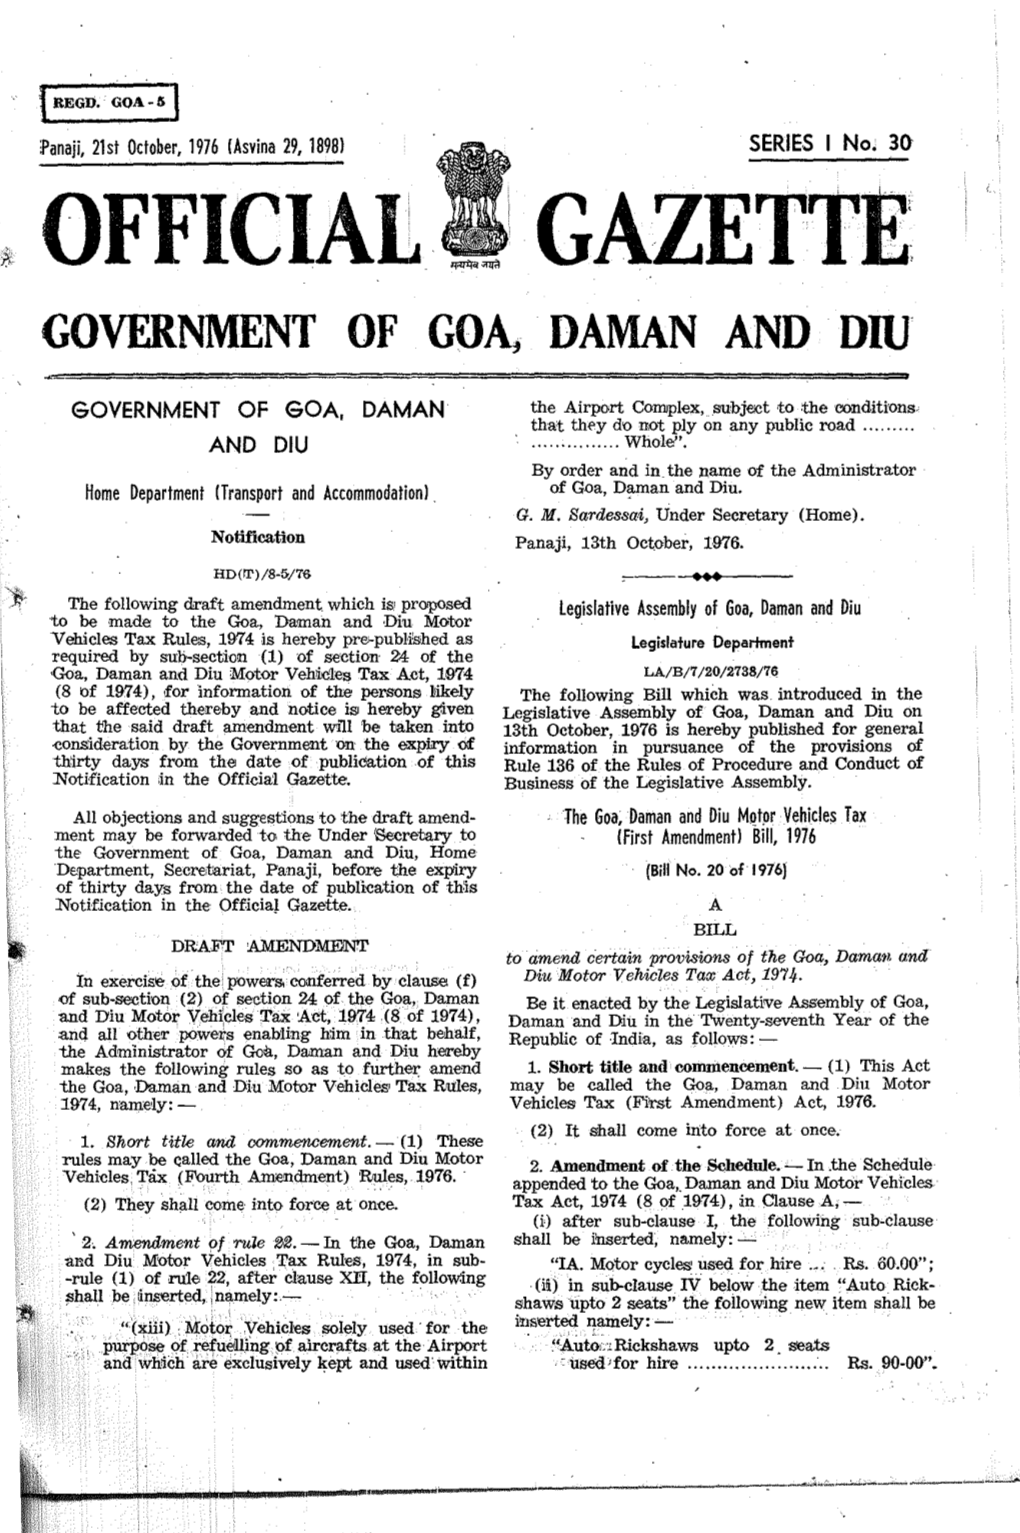 Officiai1 Gazette' Government of Goa, Daman and Diu